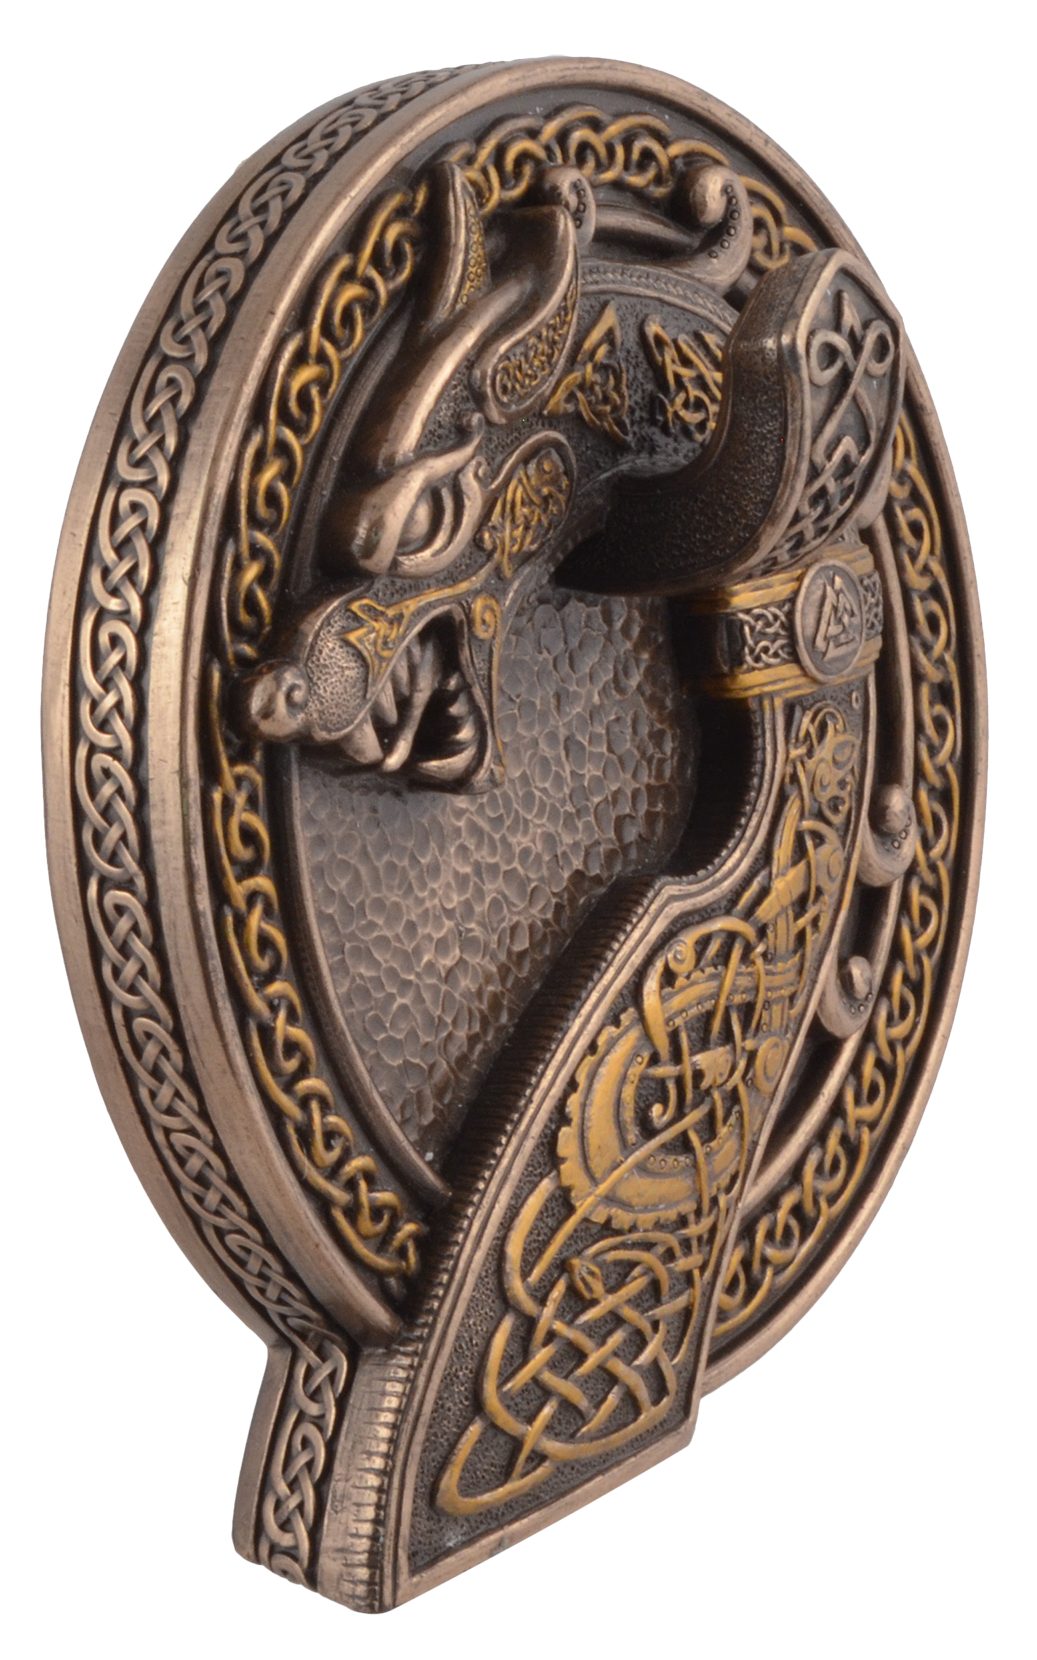 Gmbh Wanddekoobjekt Keltischer LxBxH: von Vogler bronziert by Drache direct als Hand Wanddisplay ca. 16x17x6cm Veronese, bronziert, -